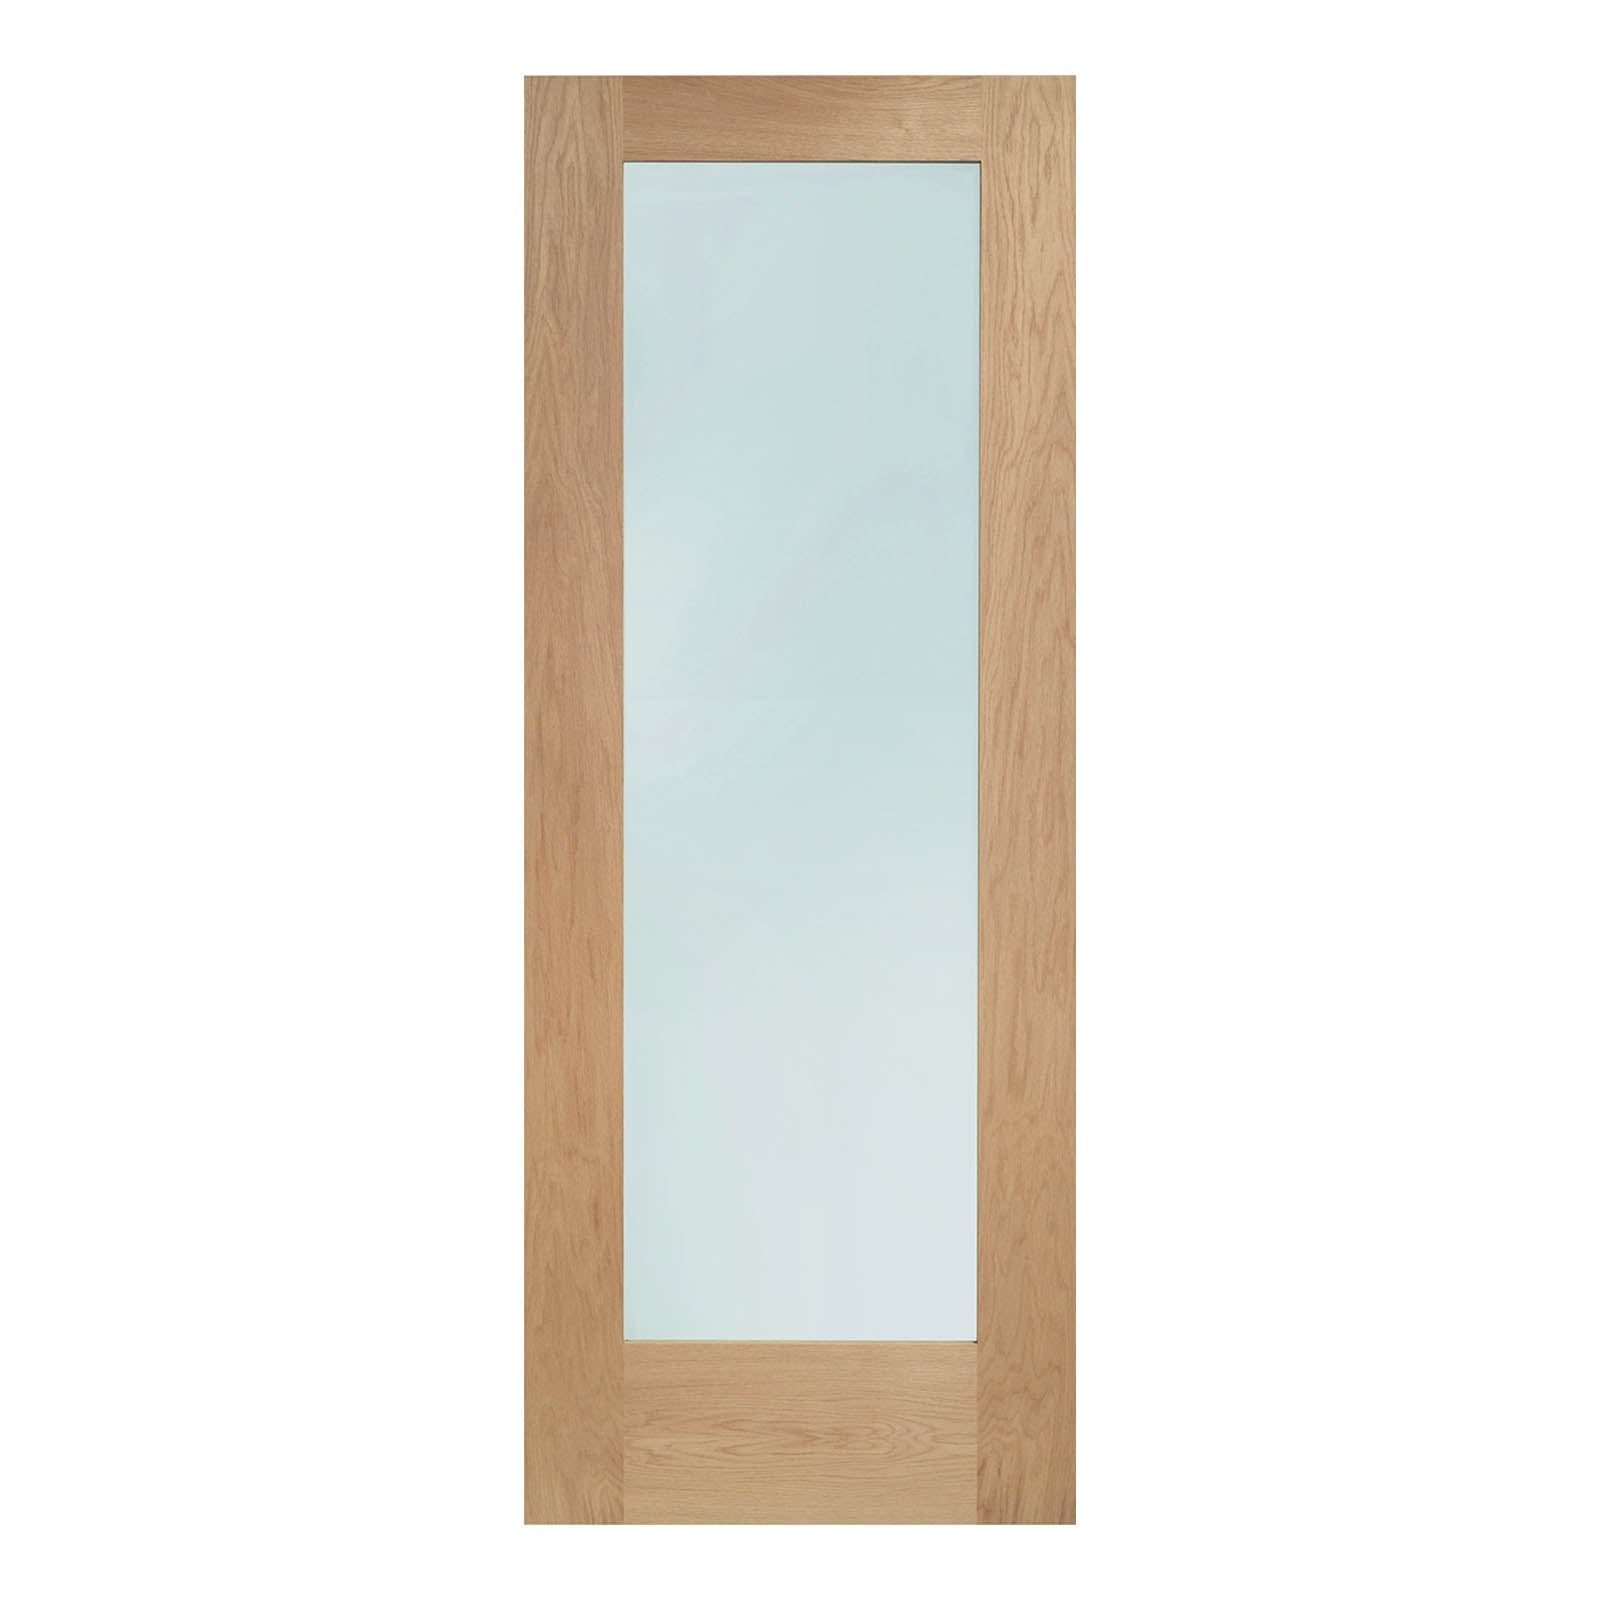 External Oak Pattern 10 Dowelled Door with Double Glazed Clear Glass